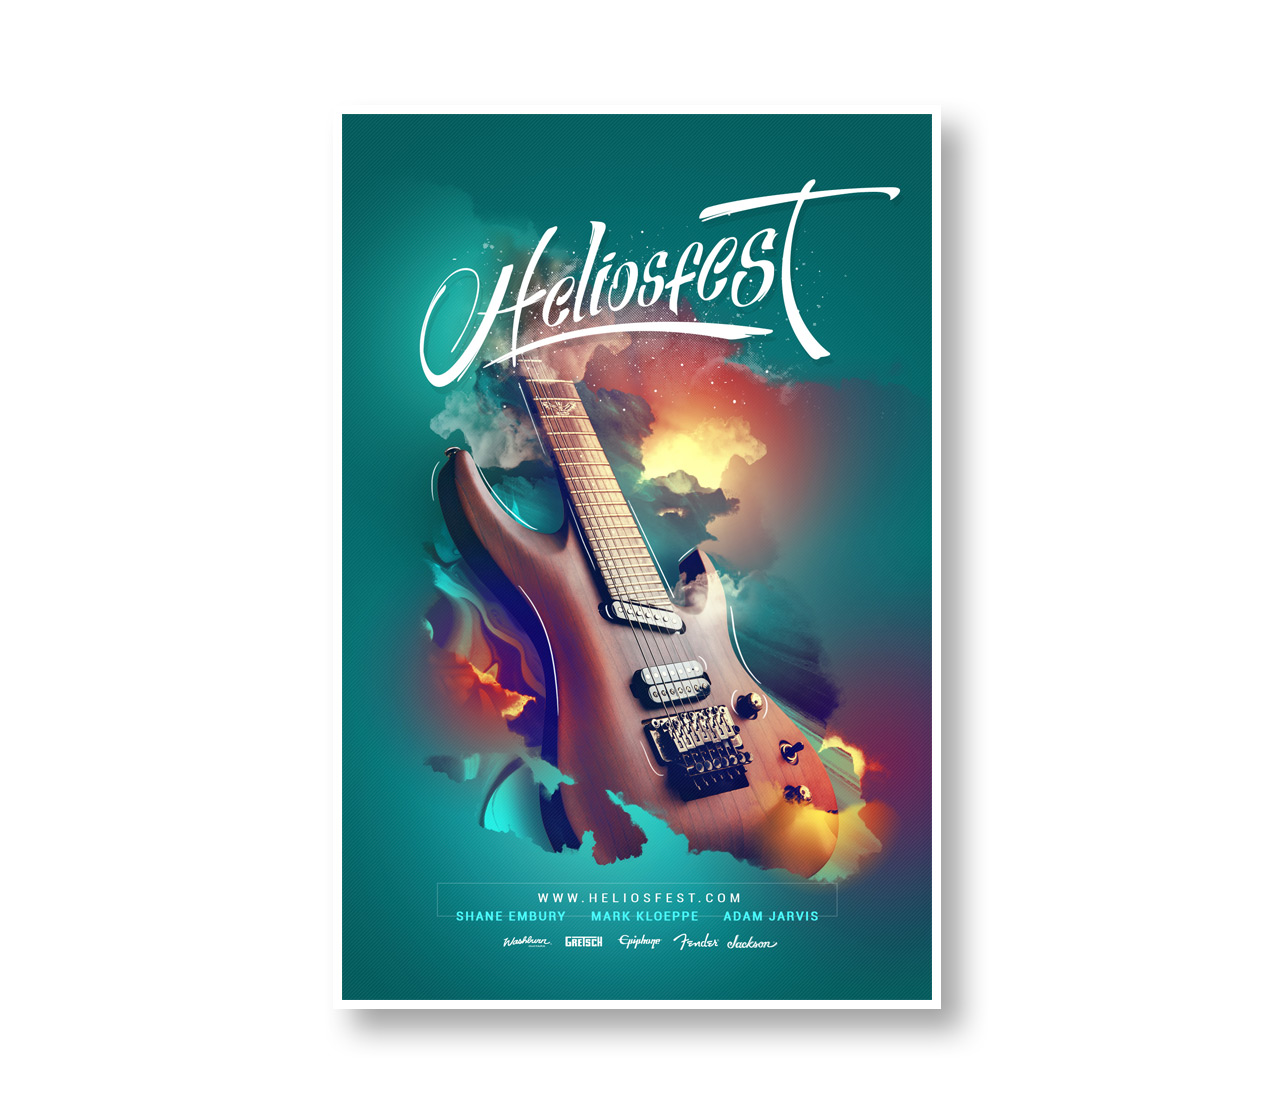 Diseño publicitario Keepinmind fotografía Poster Heliosfest